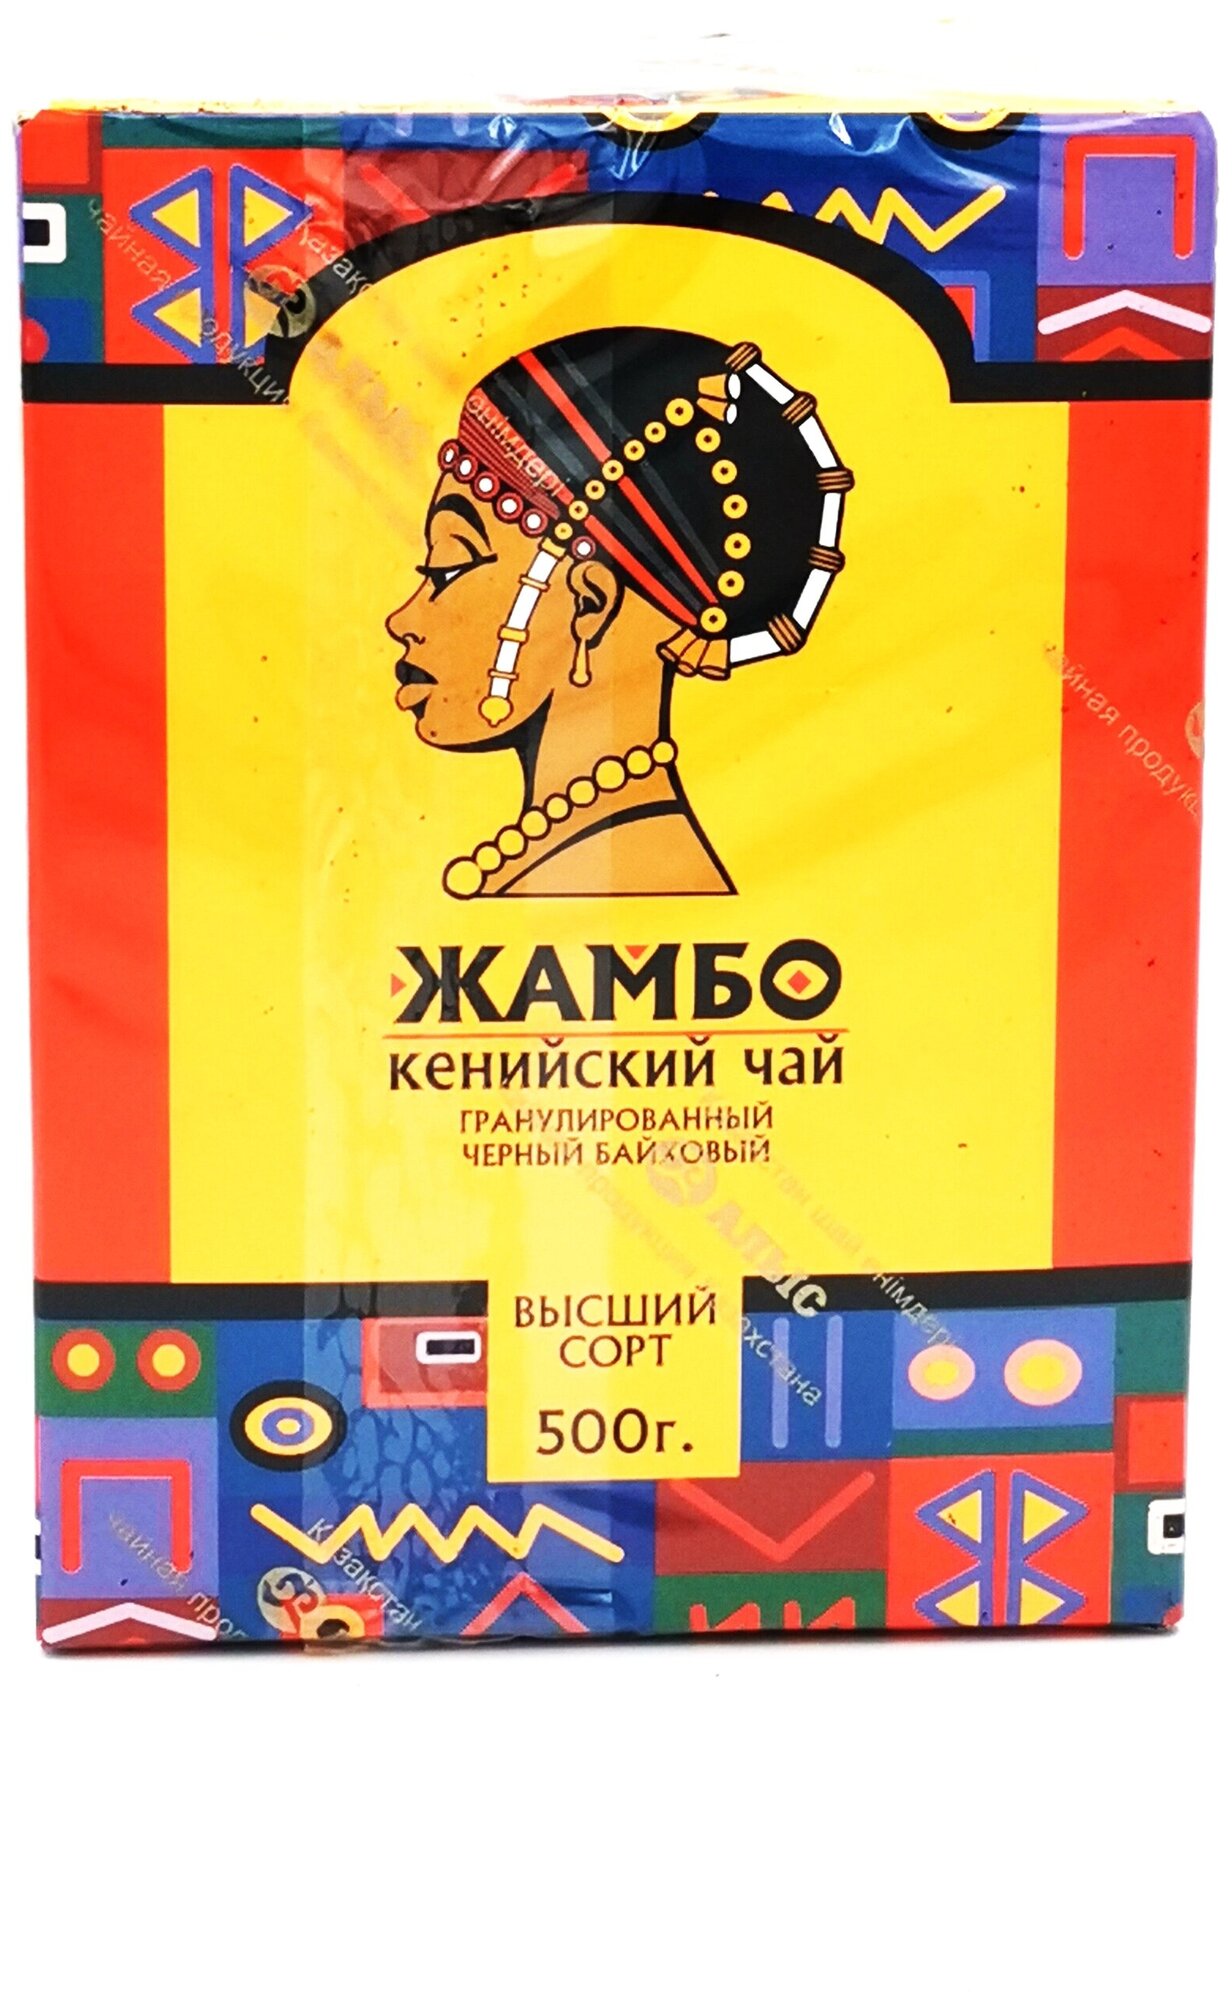 Жамбо / Чай черный рассыпной гранулированный кенийский высший сорт жамбо 500гр. - фотография № 3